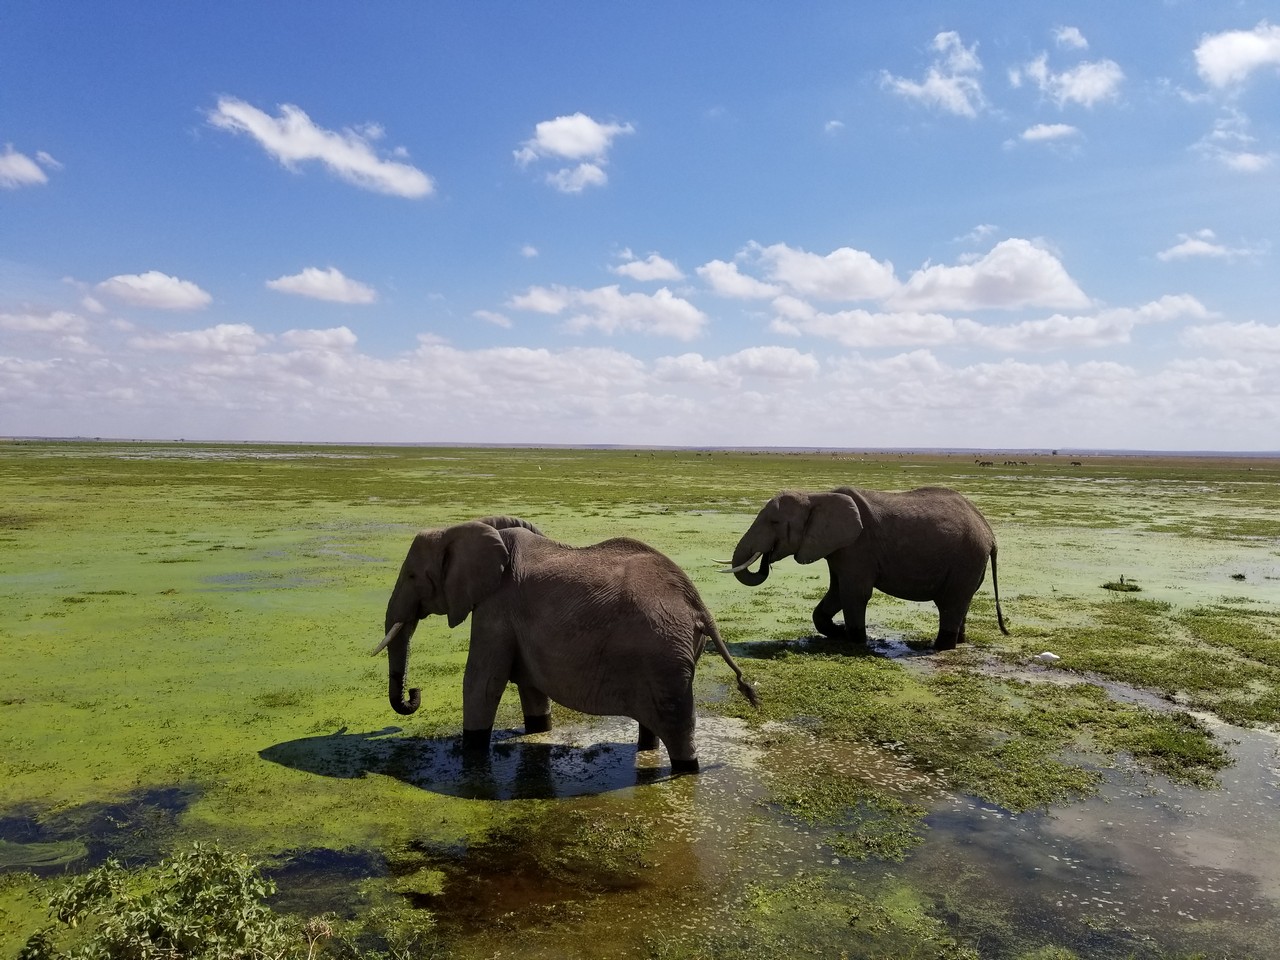 elephants walking in a swamp